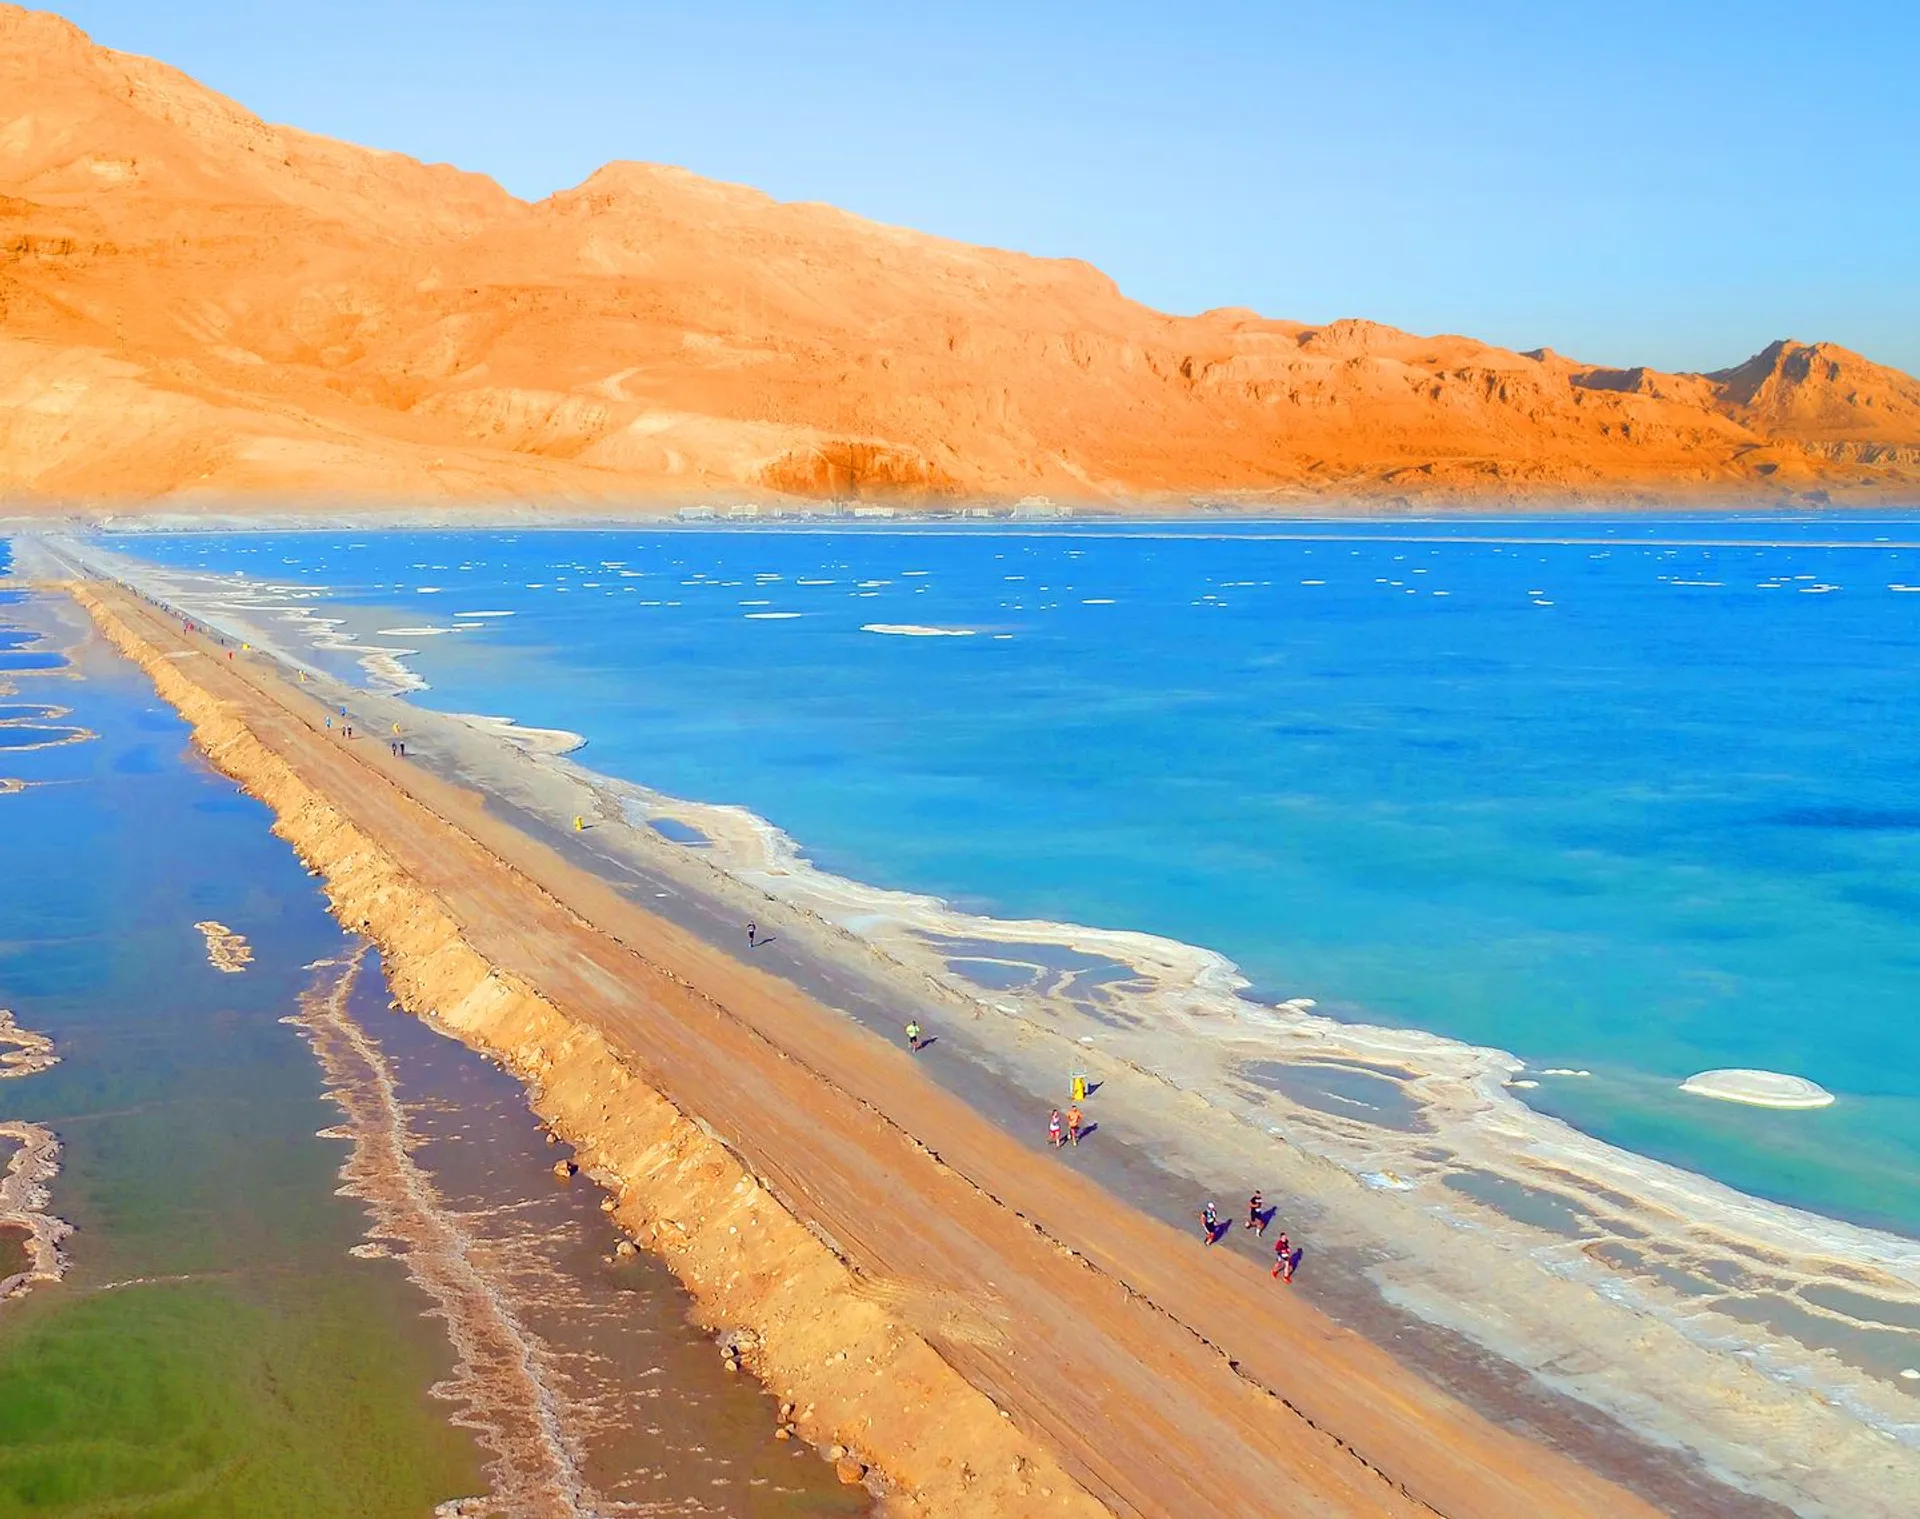 Image of Israel's Dead Sea Marathon